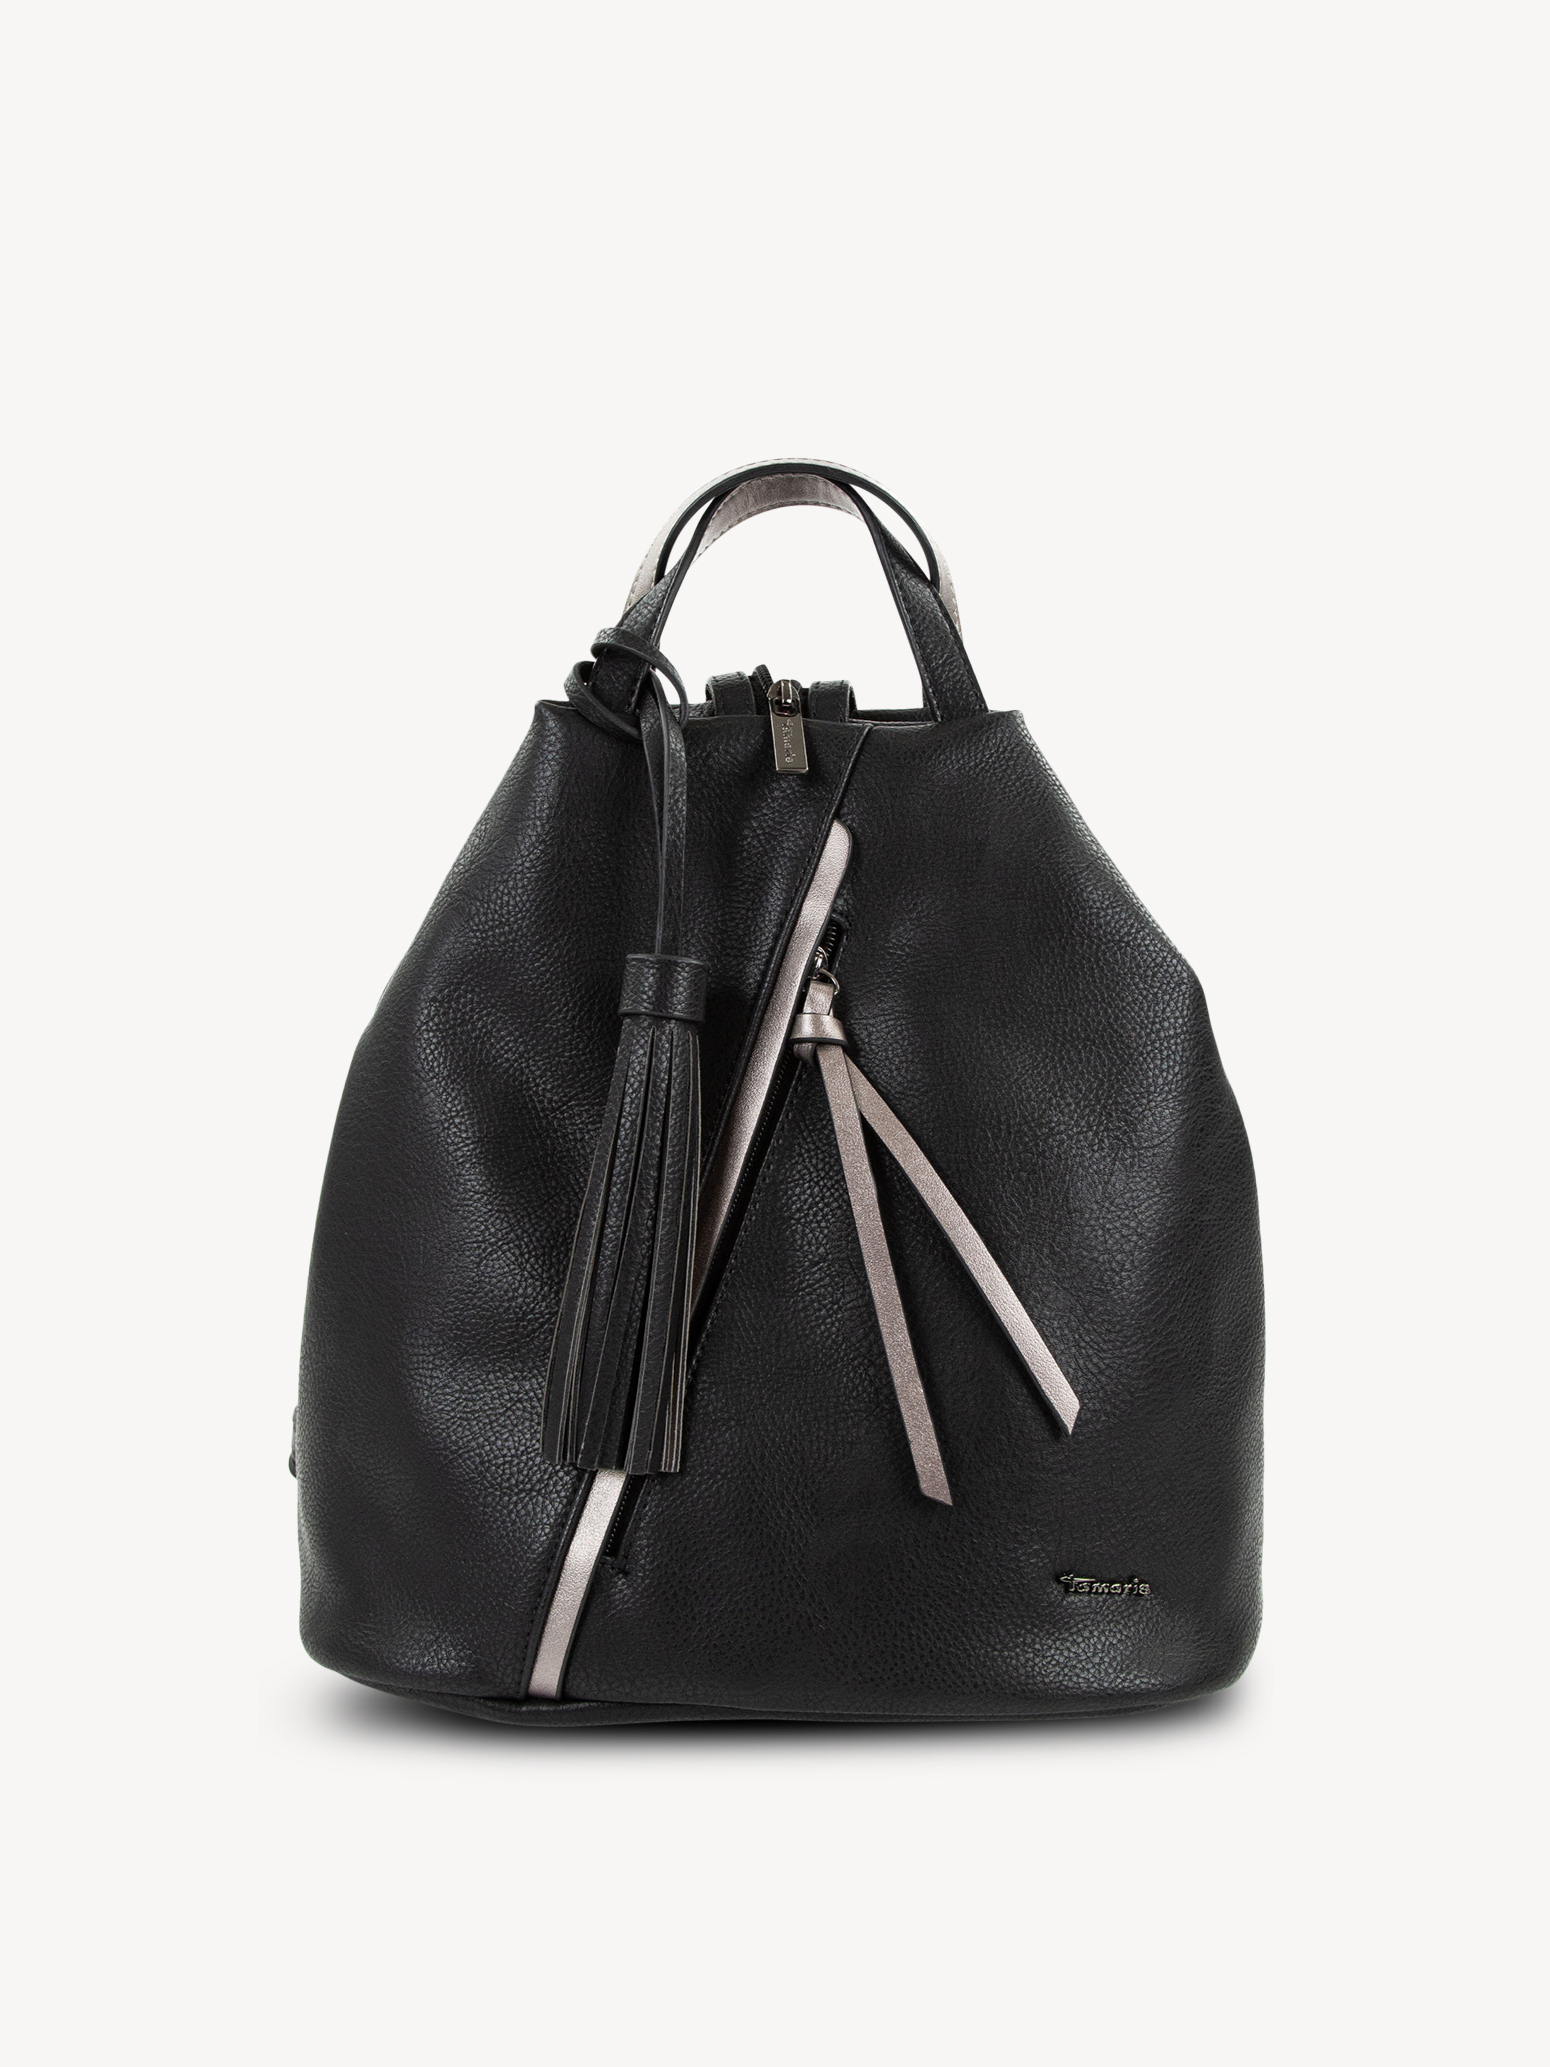 Backpack black 30625-100-1: Buy Backpacks